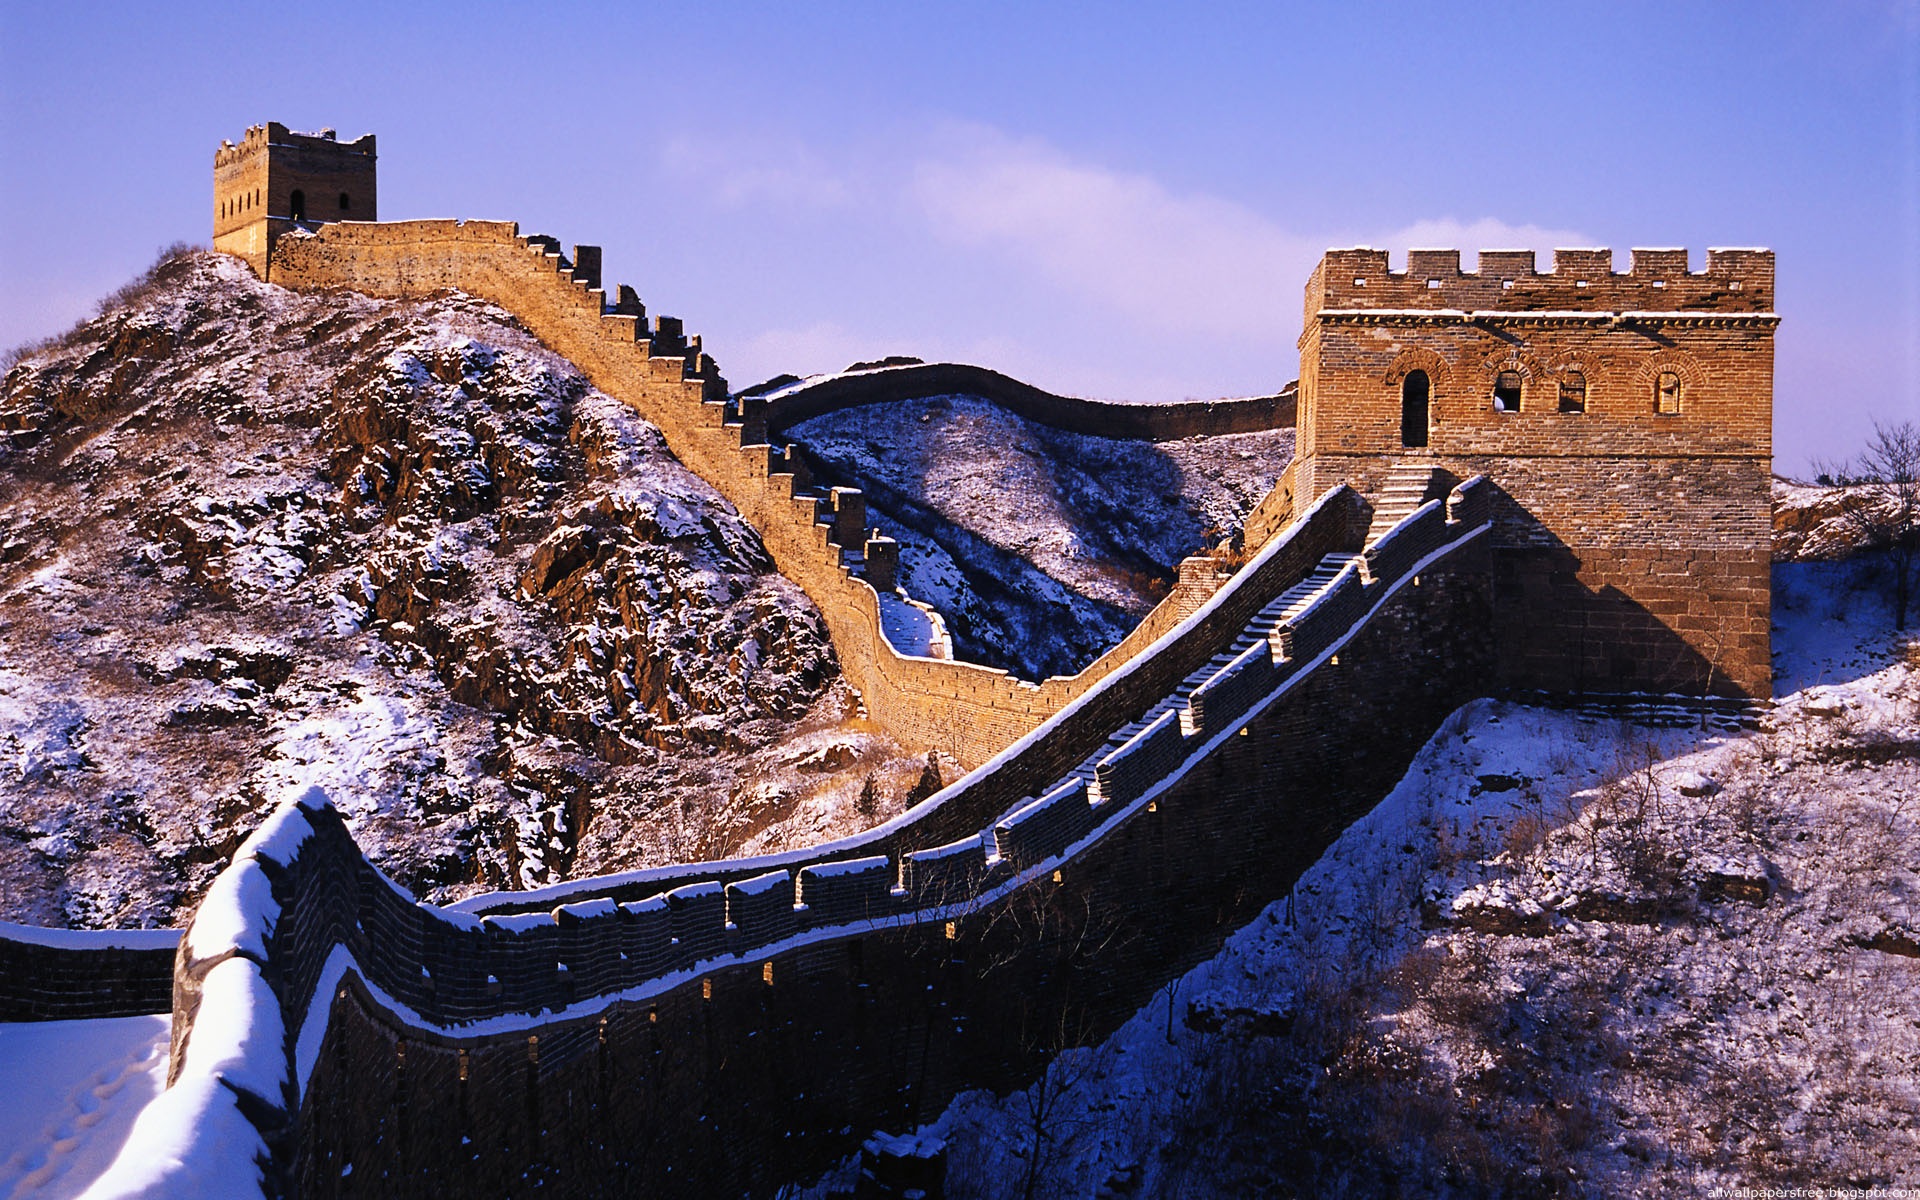 Man Made Great Wall Of China 1920x1200